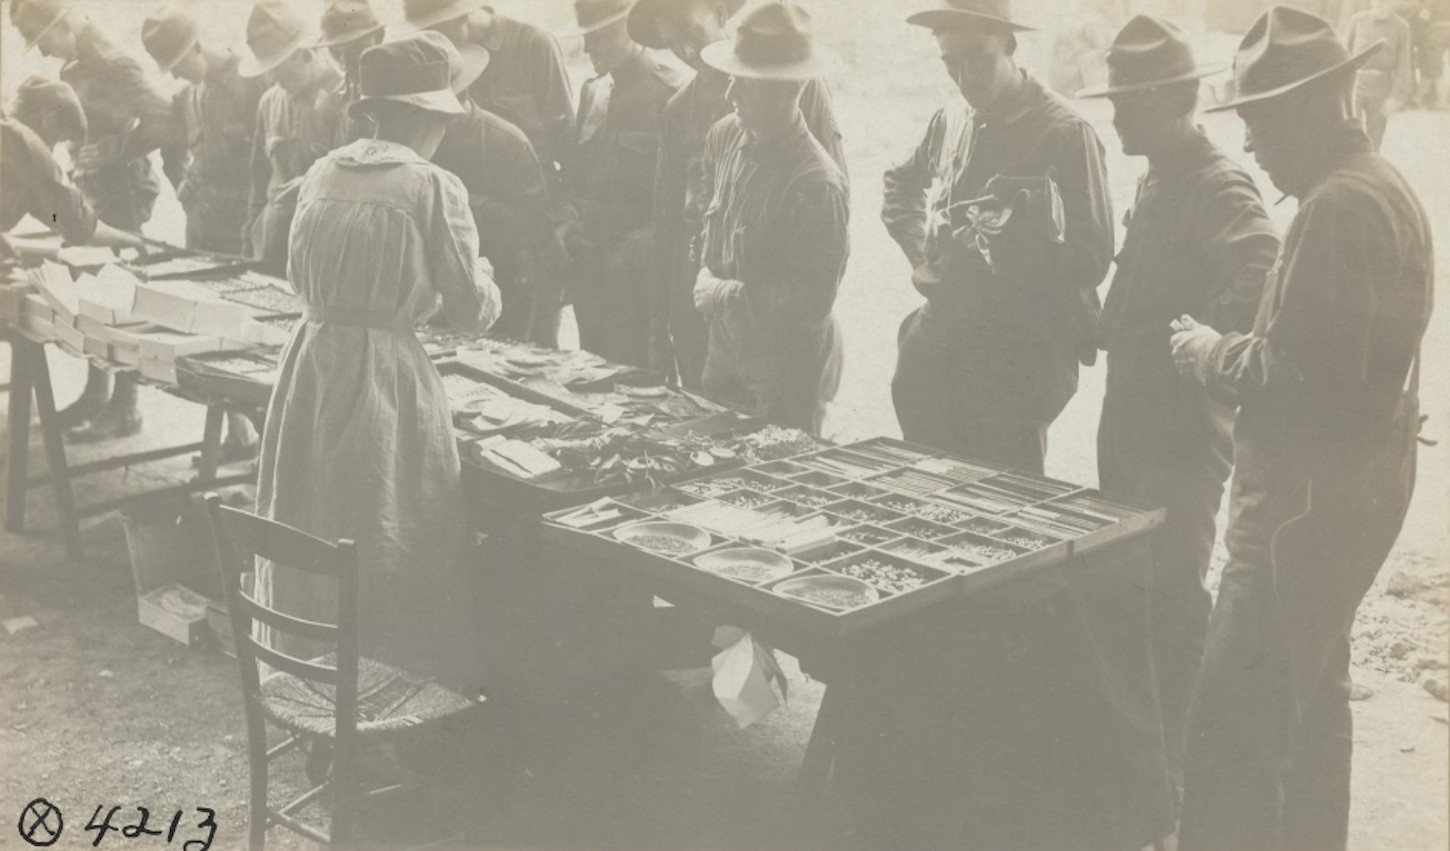 Doughboys achetant des babioles à une civile française, sans lieu ni date. National archives at College Park:111-SC-4213.